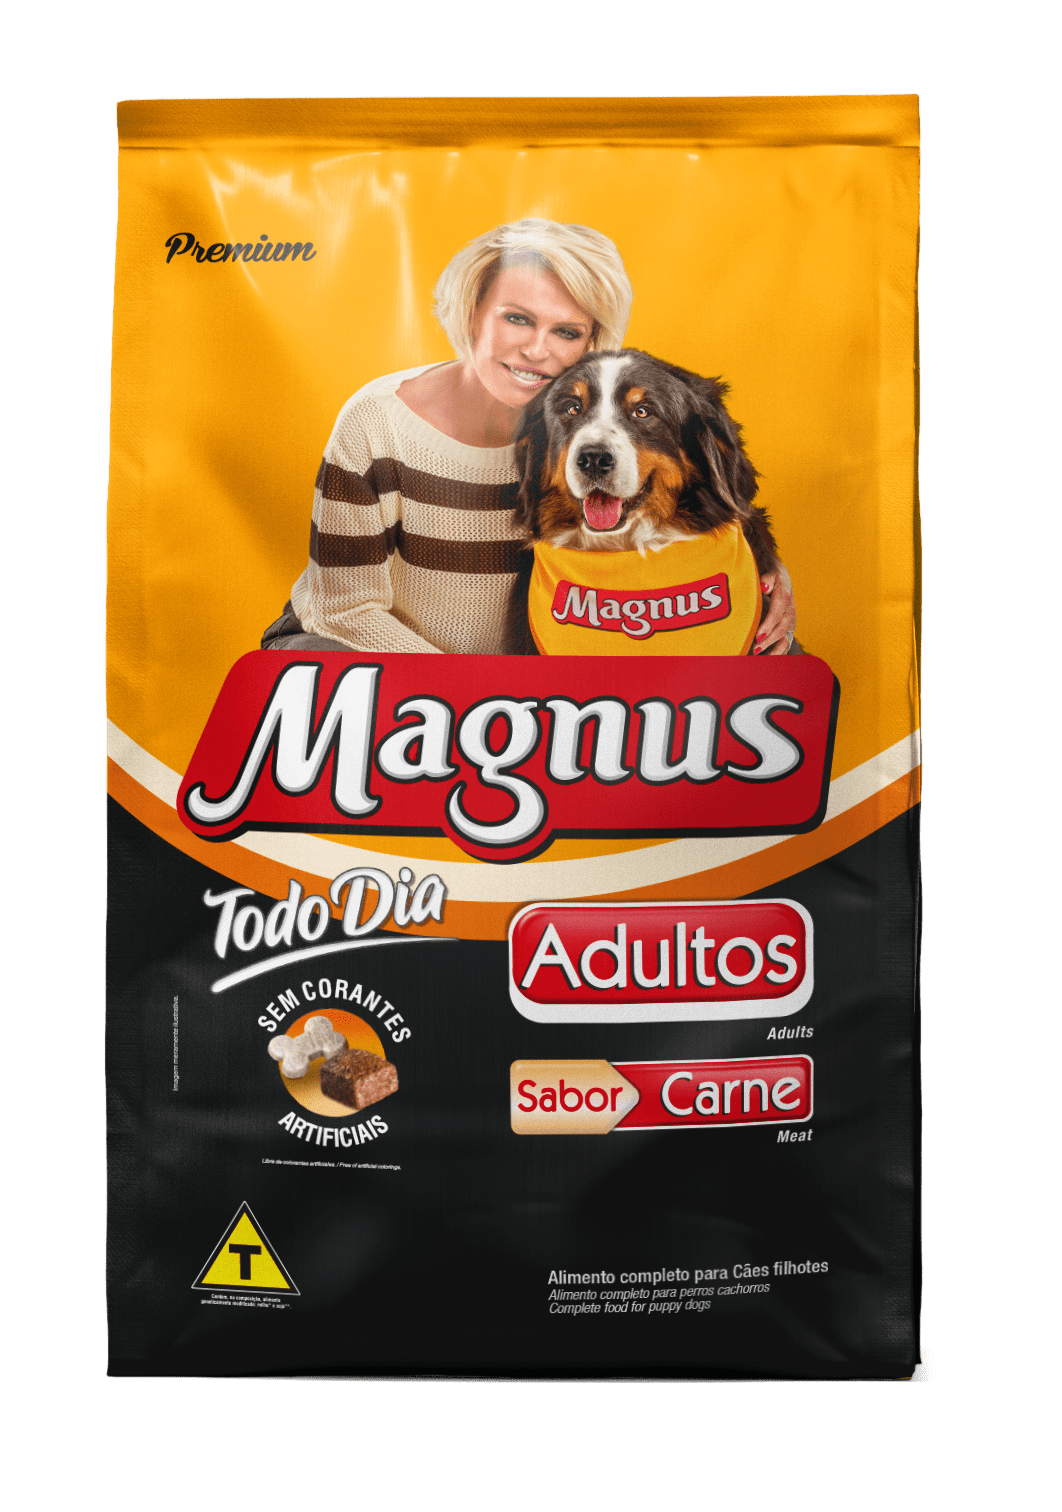 Magnus Premium Todo Dia Adult Dogs Beef flavor